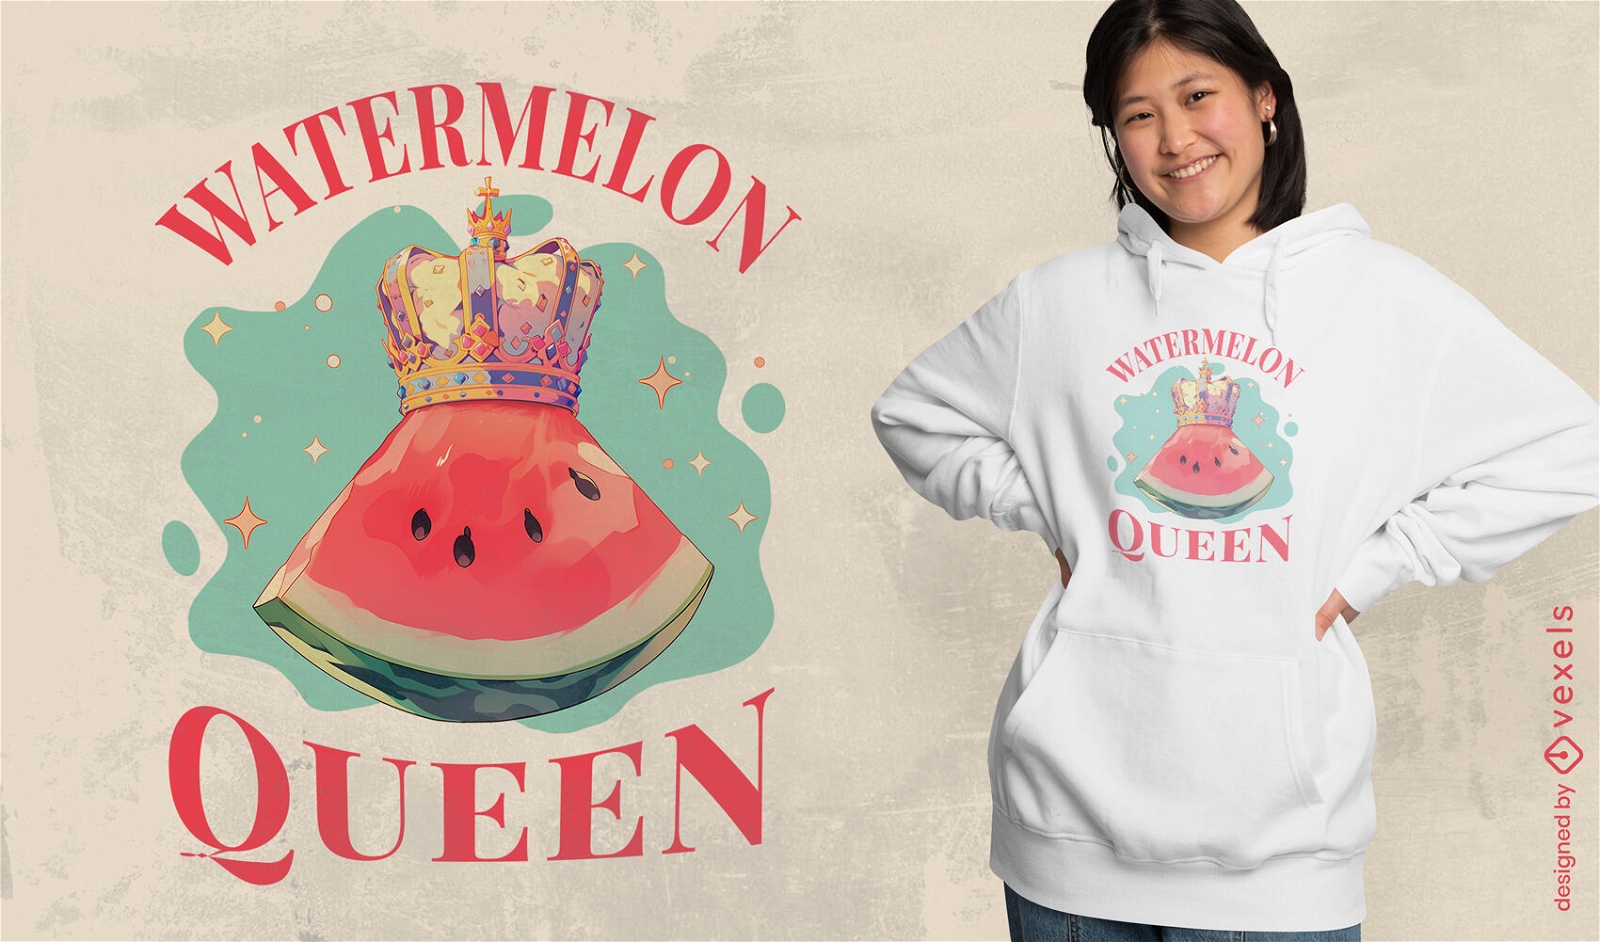 Watermelon Queen t-shirt design